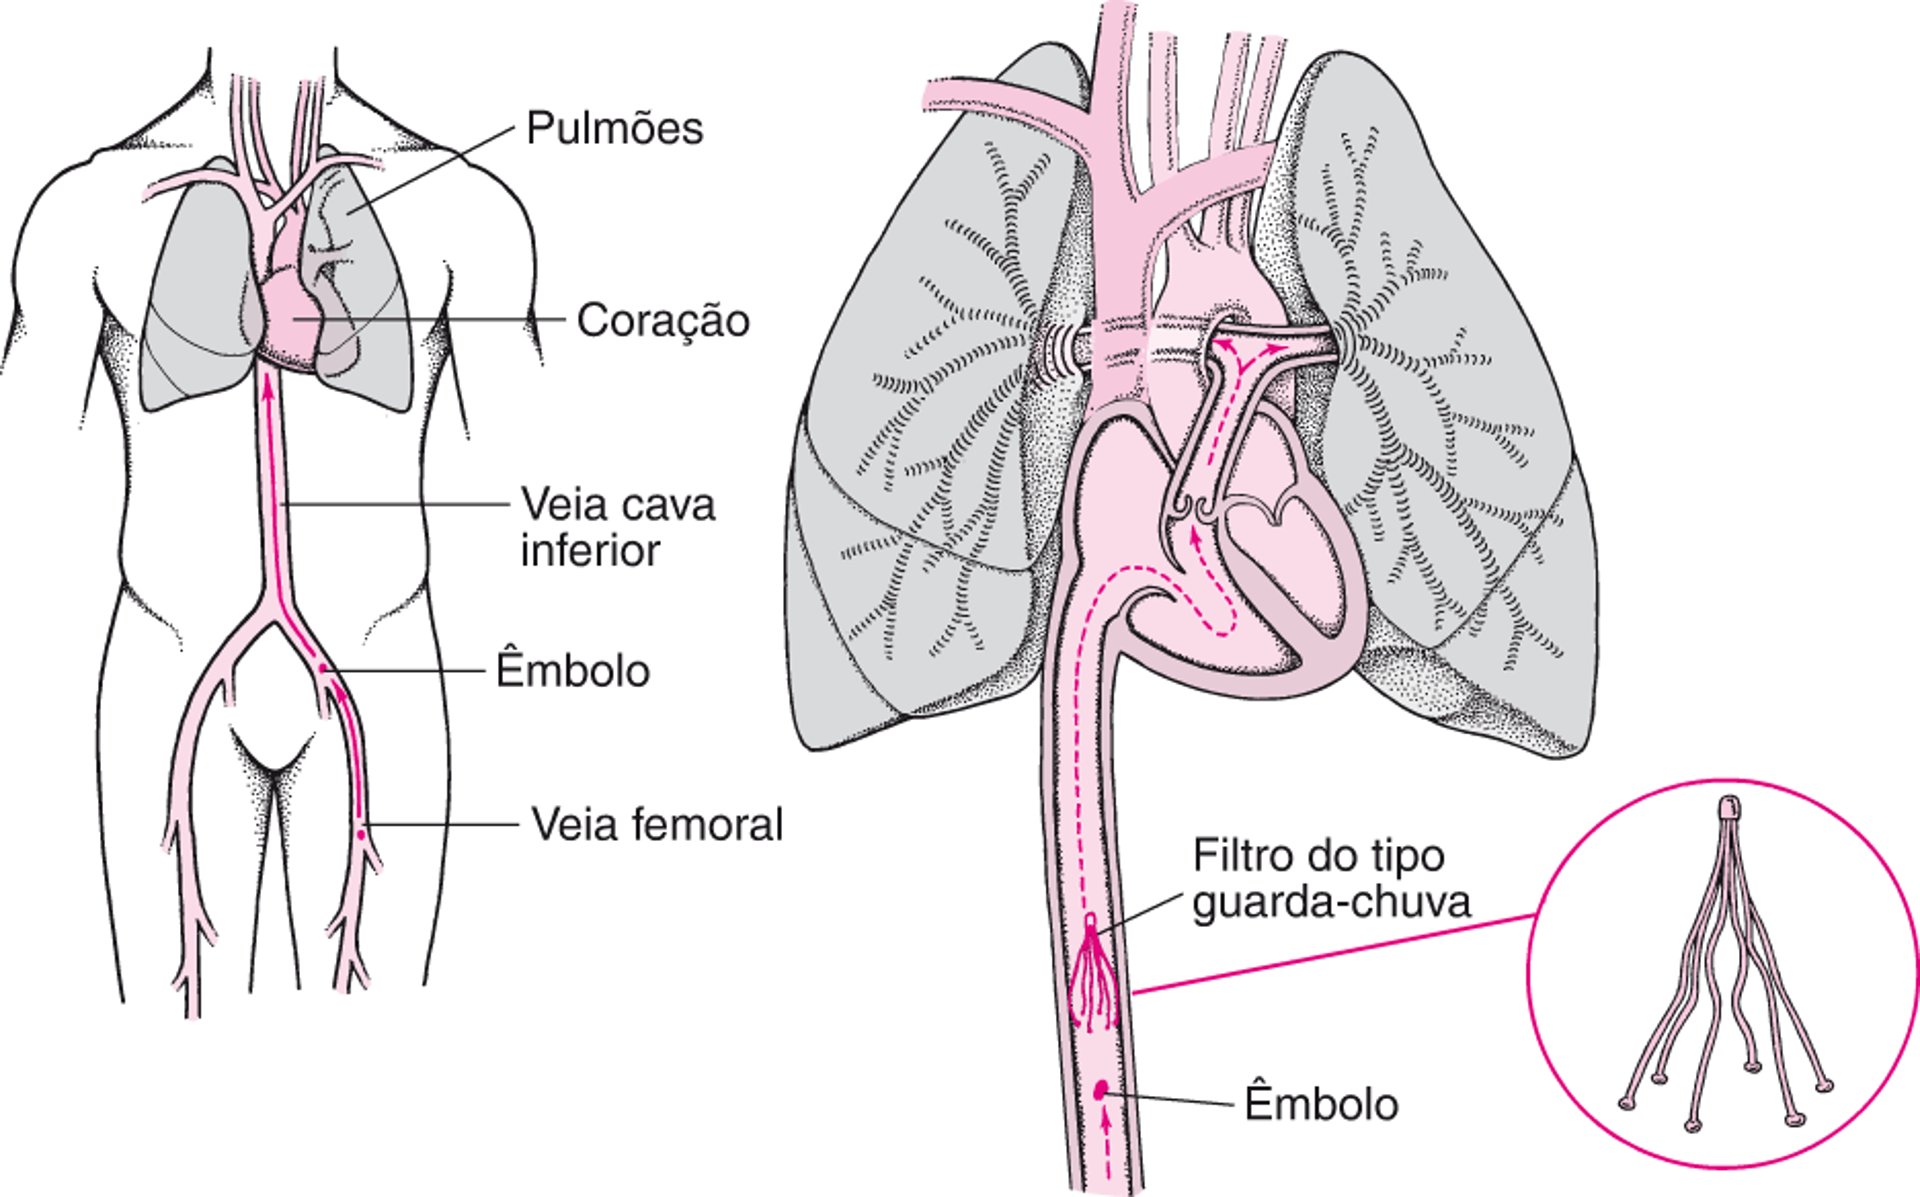 Filtros de veia cava inferior: Uma forma de prevenir a embolia pulmonar